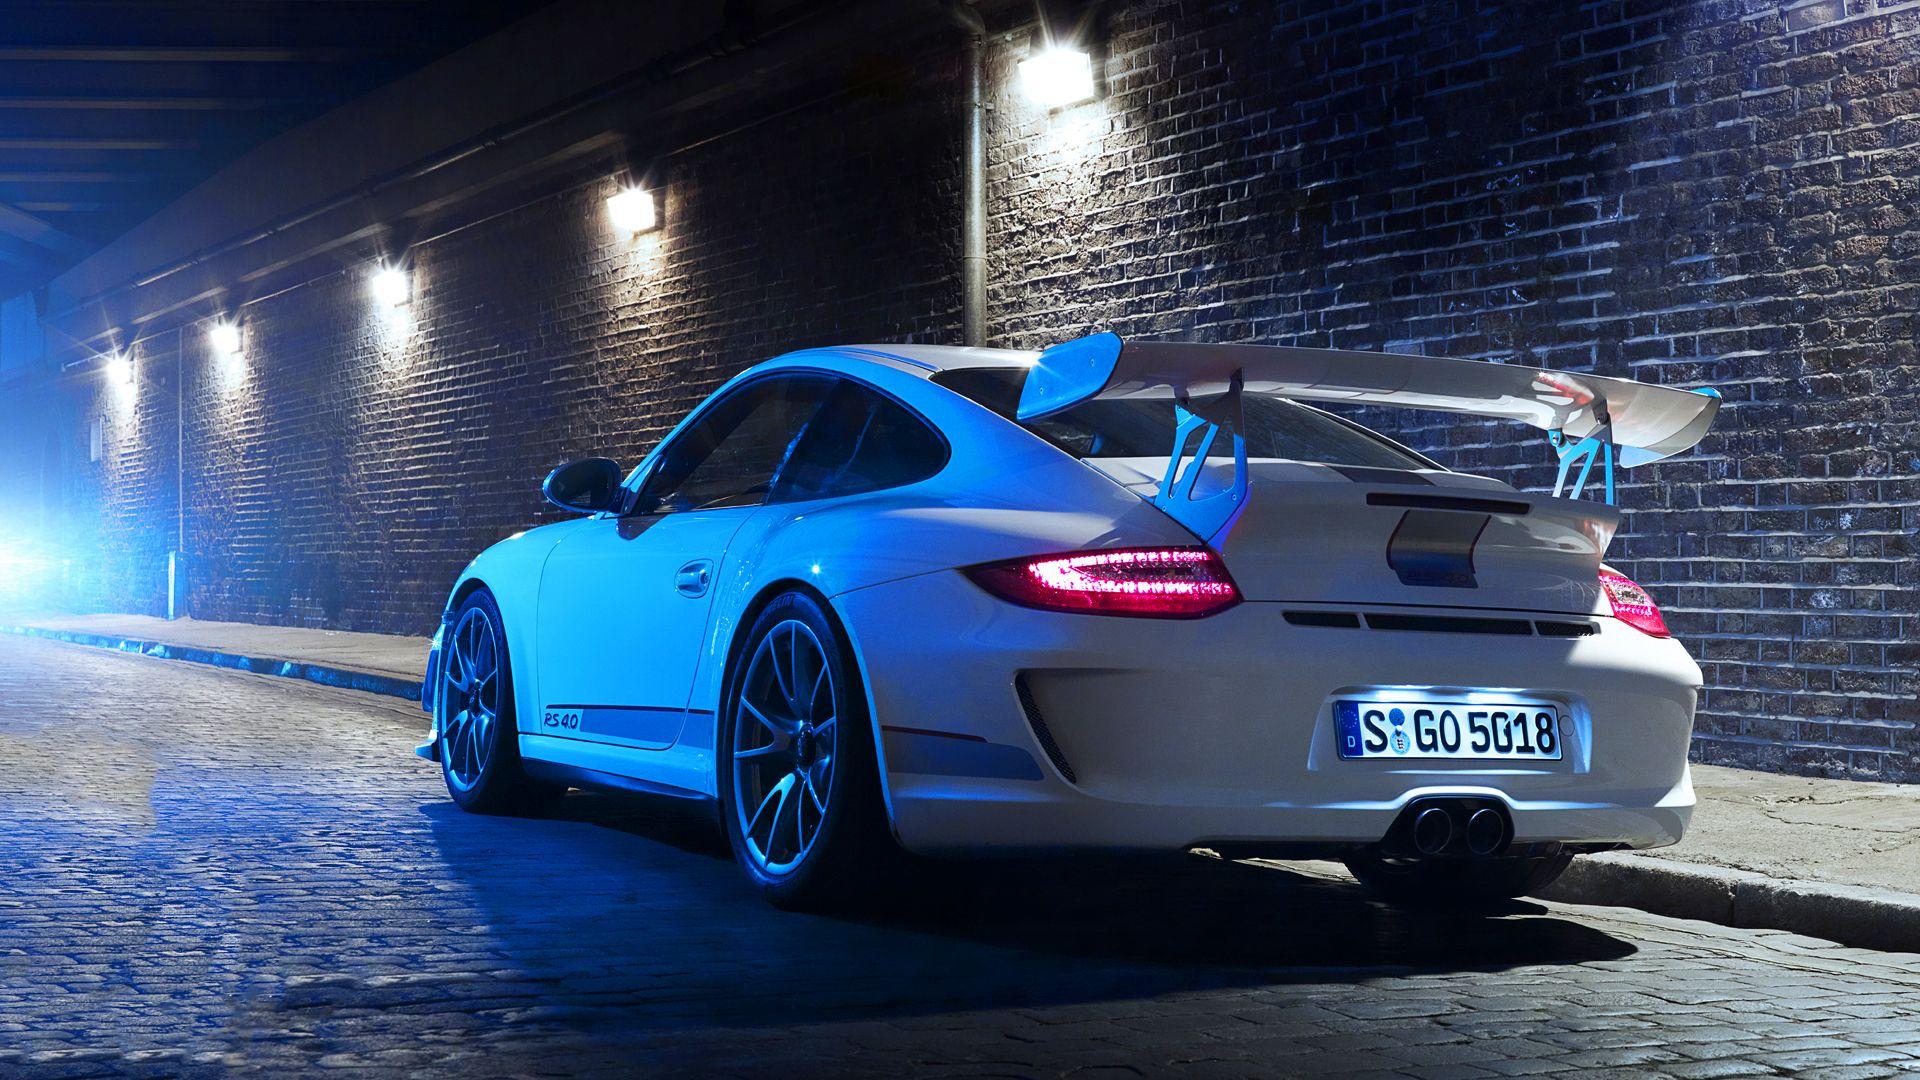 Porsche 911 Gt3 Rs Wallpapers Top Free Porsche 911 Gt3 Rs Backgrounds 